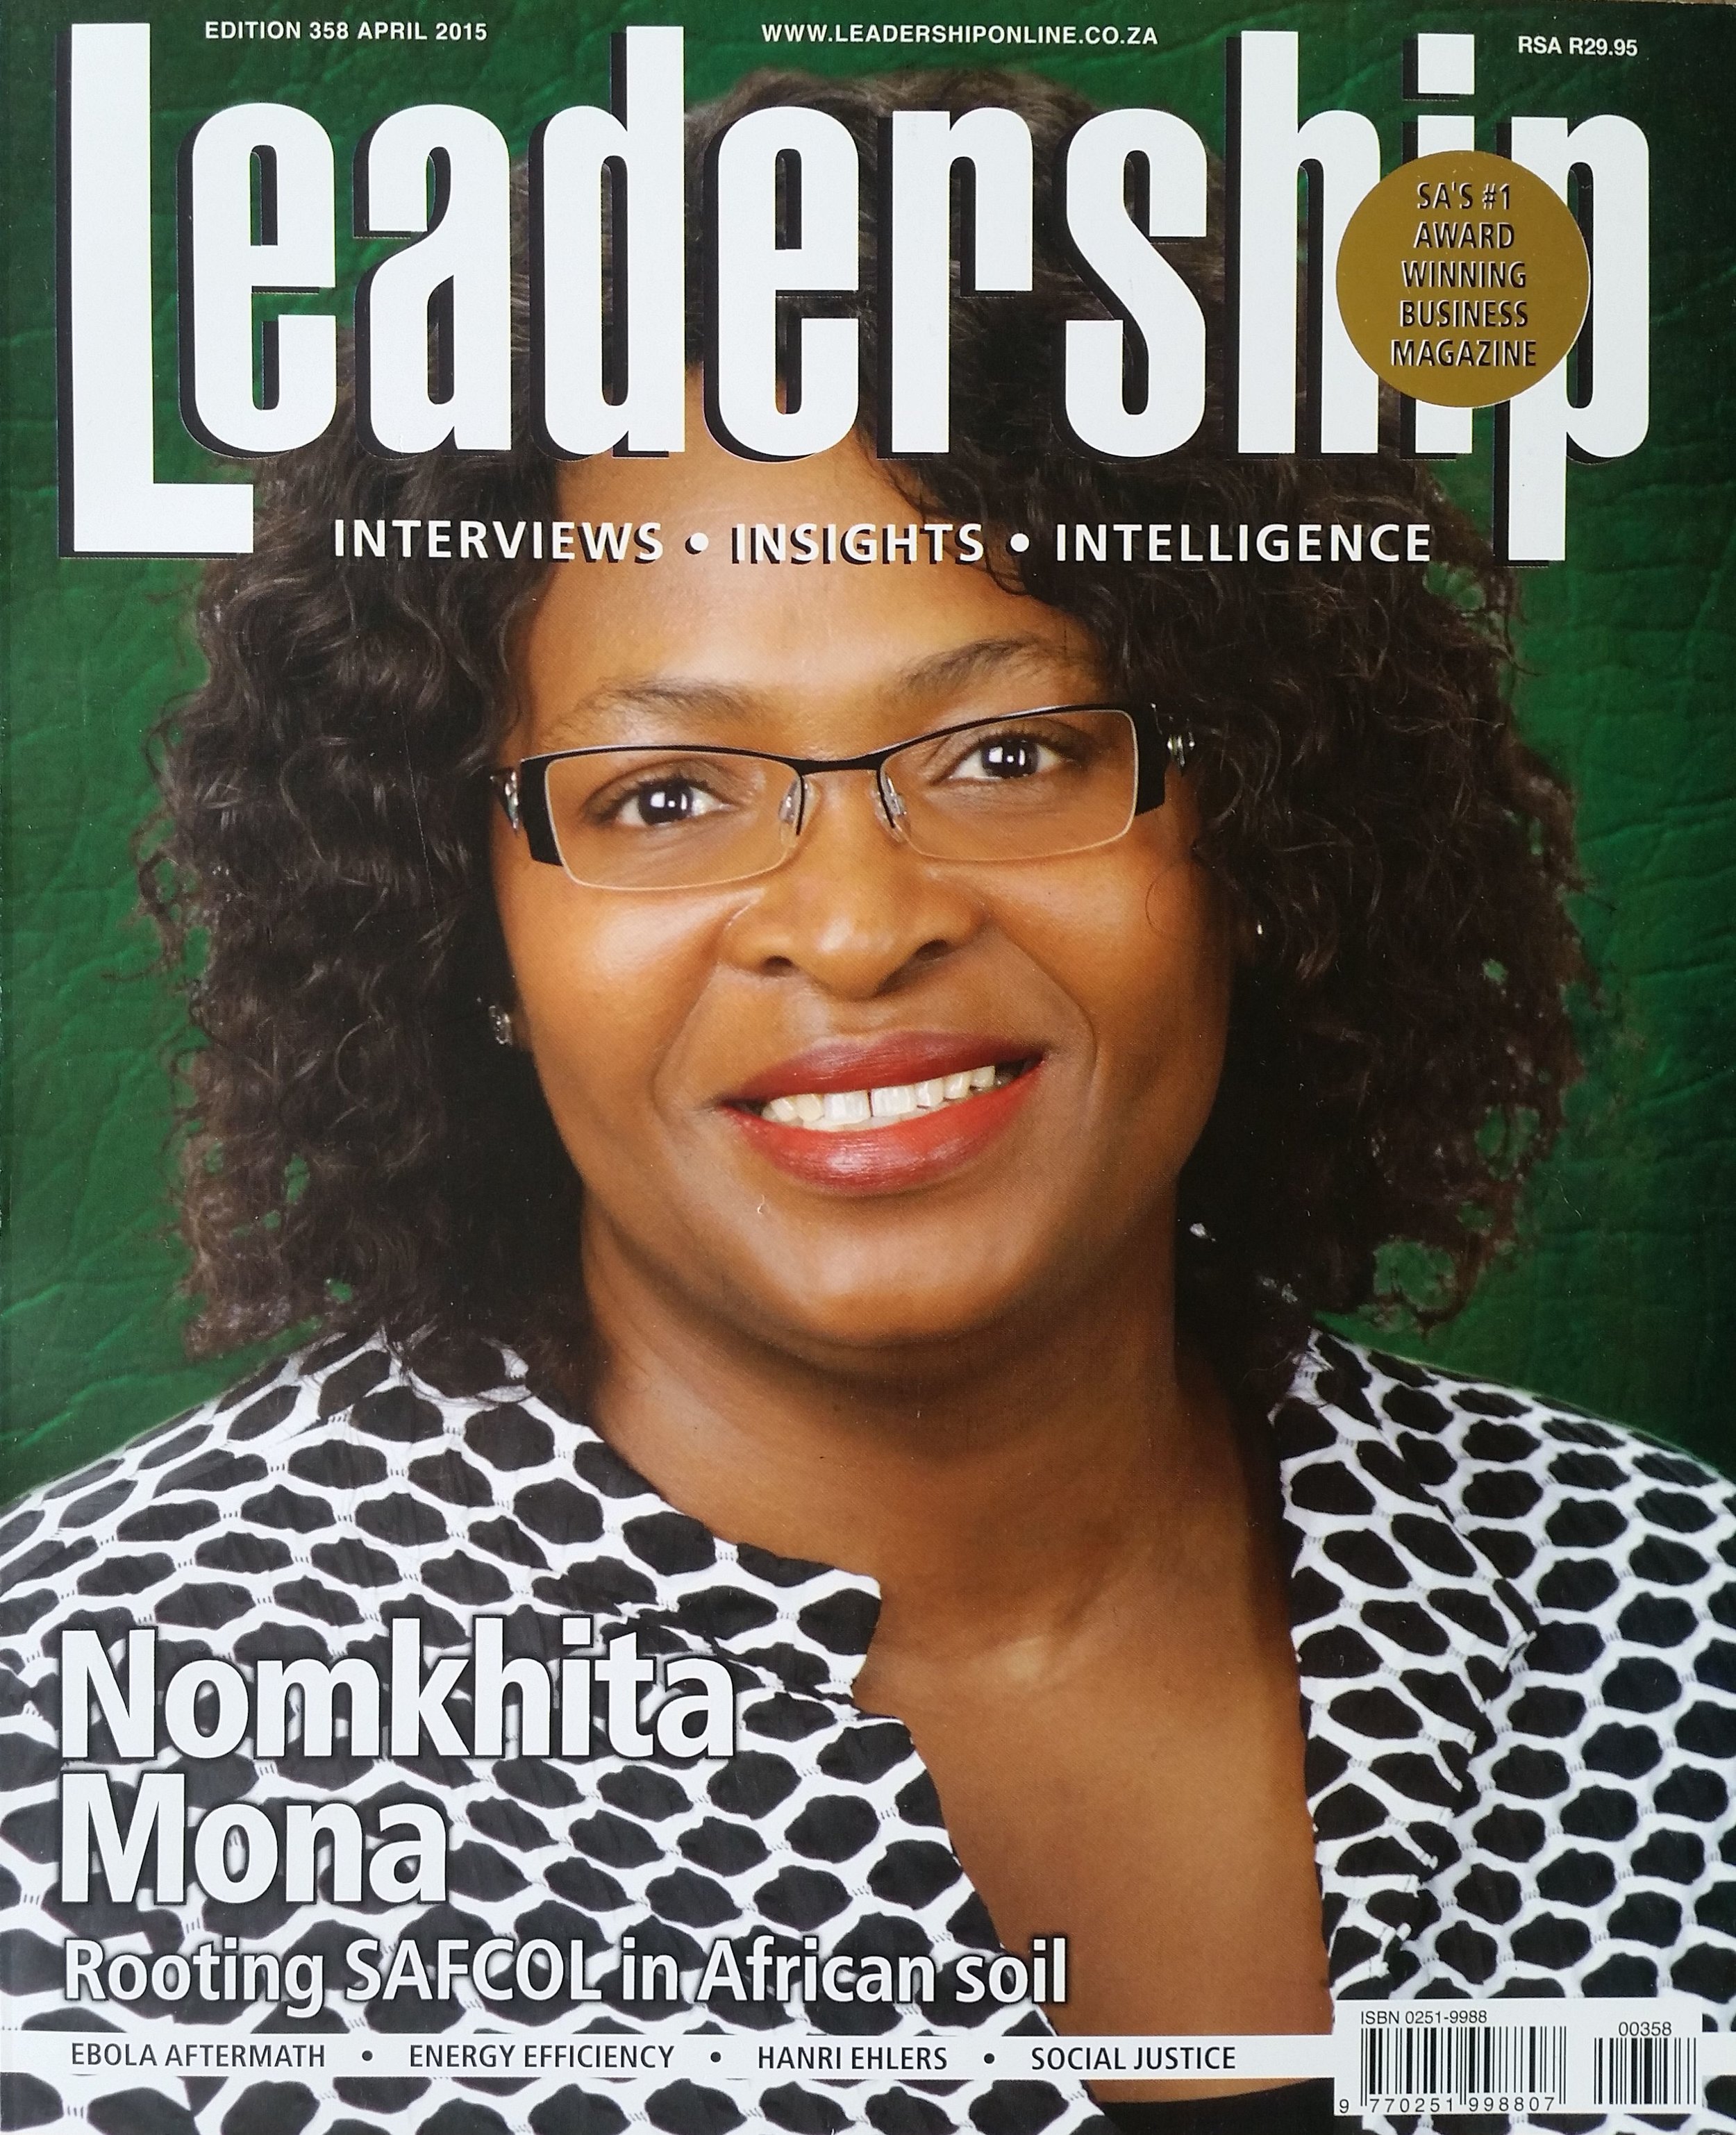 Leadership magazine LIO global nadia read thaele